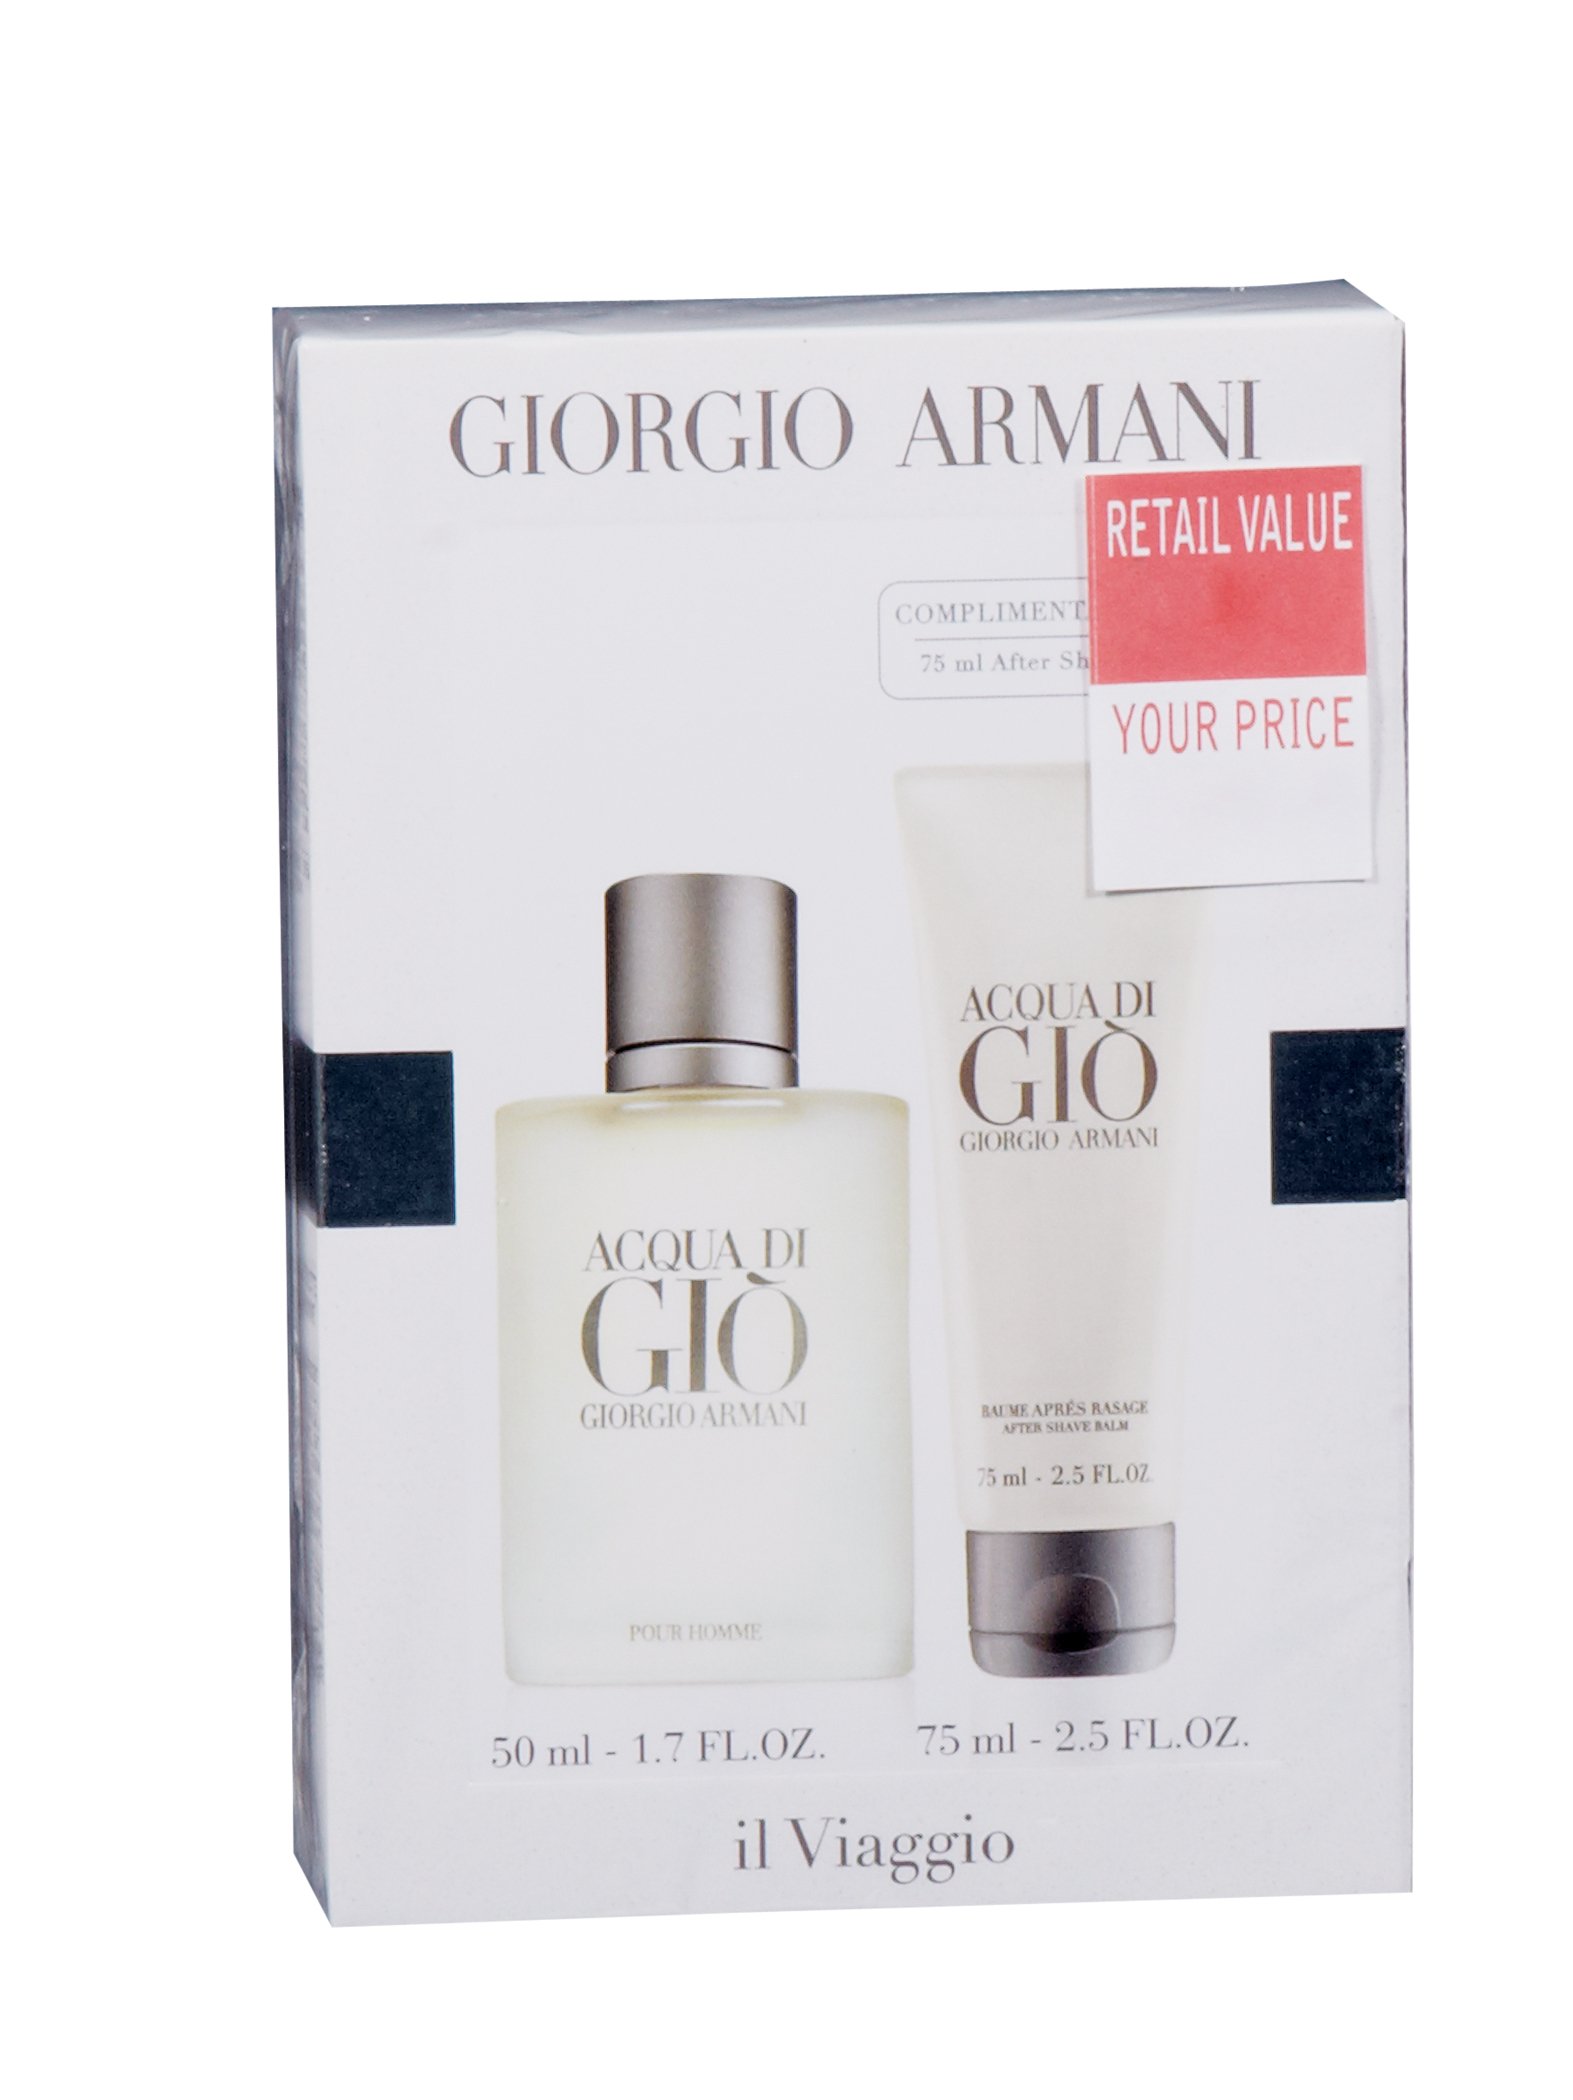 Giorgio Armani Acqua Di Gio Set - Shop Fragrance at H-E-B